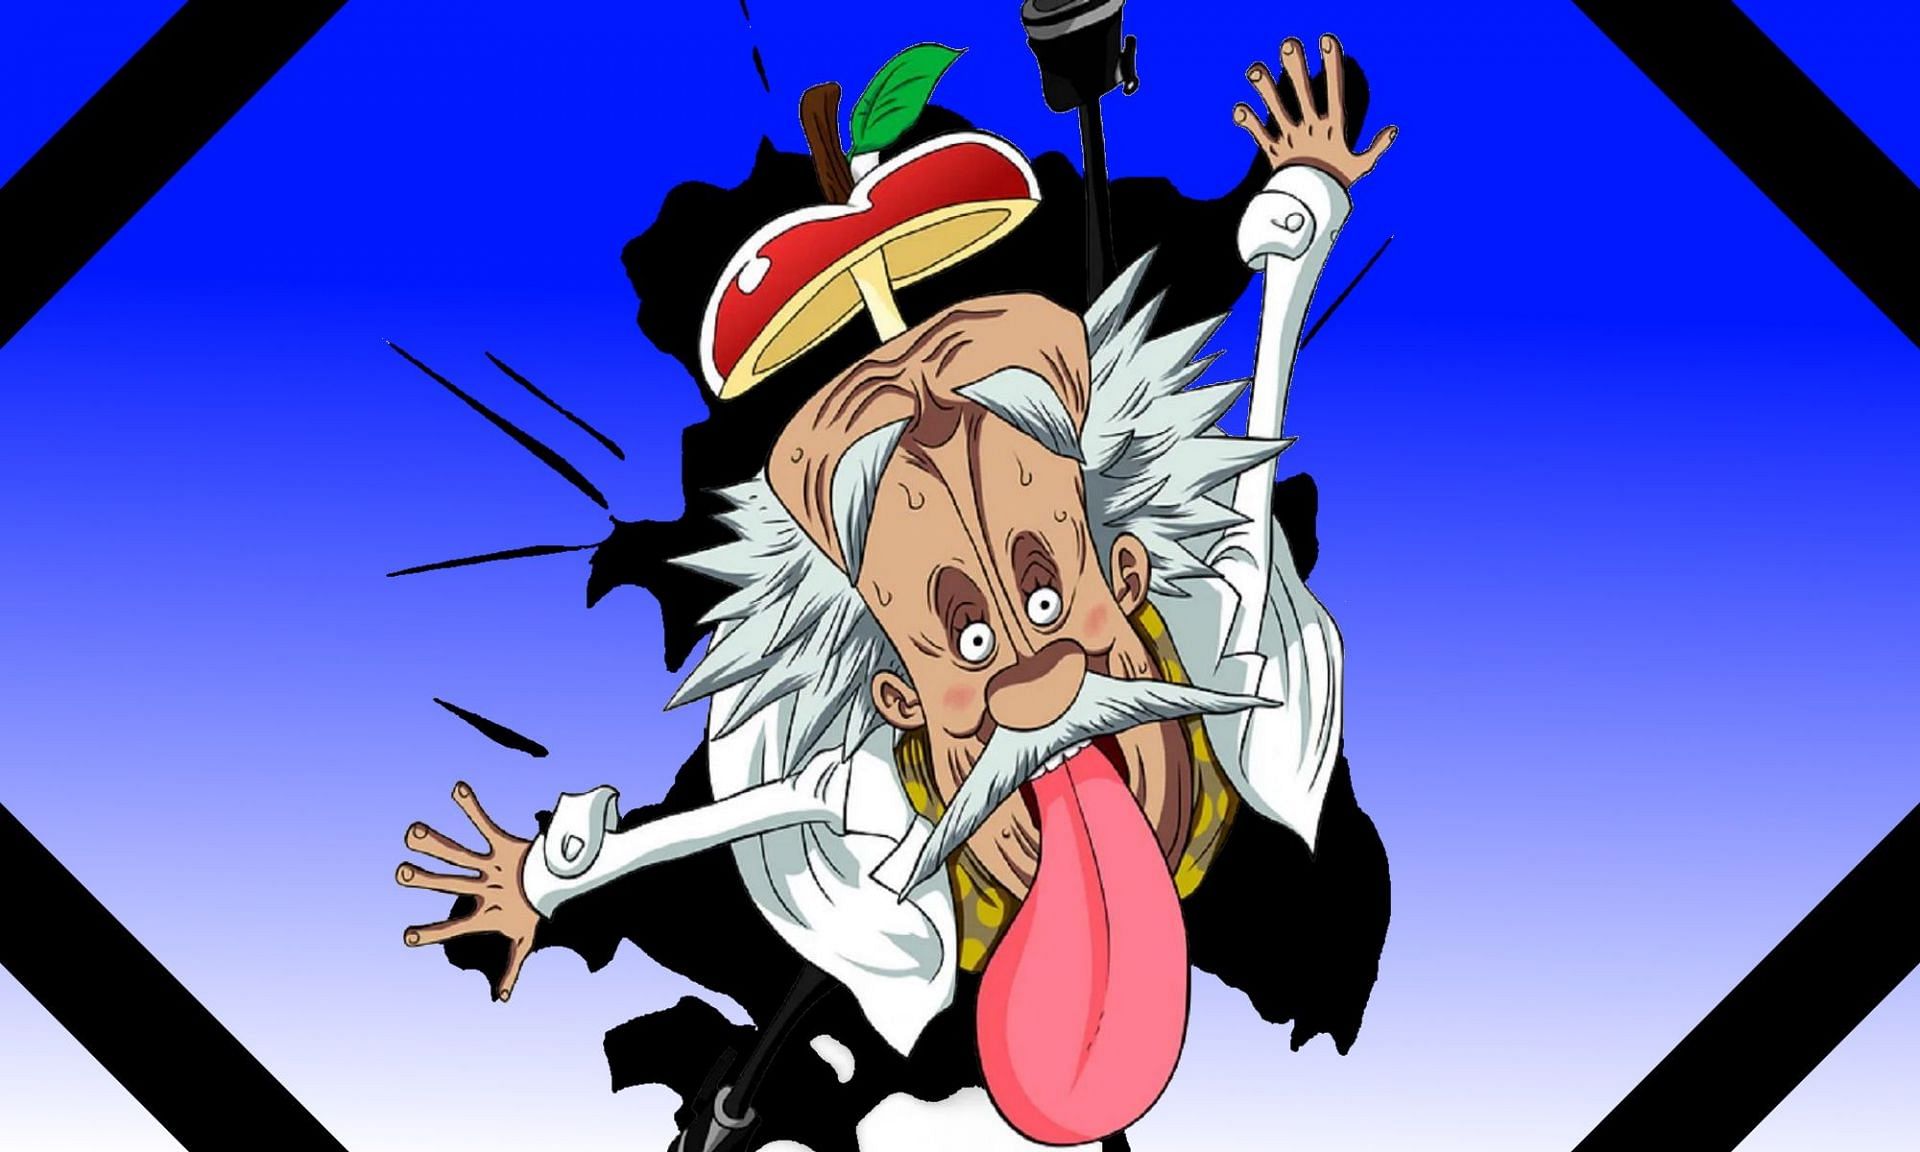 Dr. Vegapunk (old man)'s - One Piece World Journey